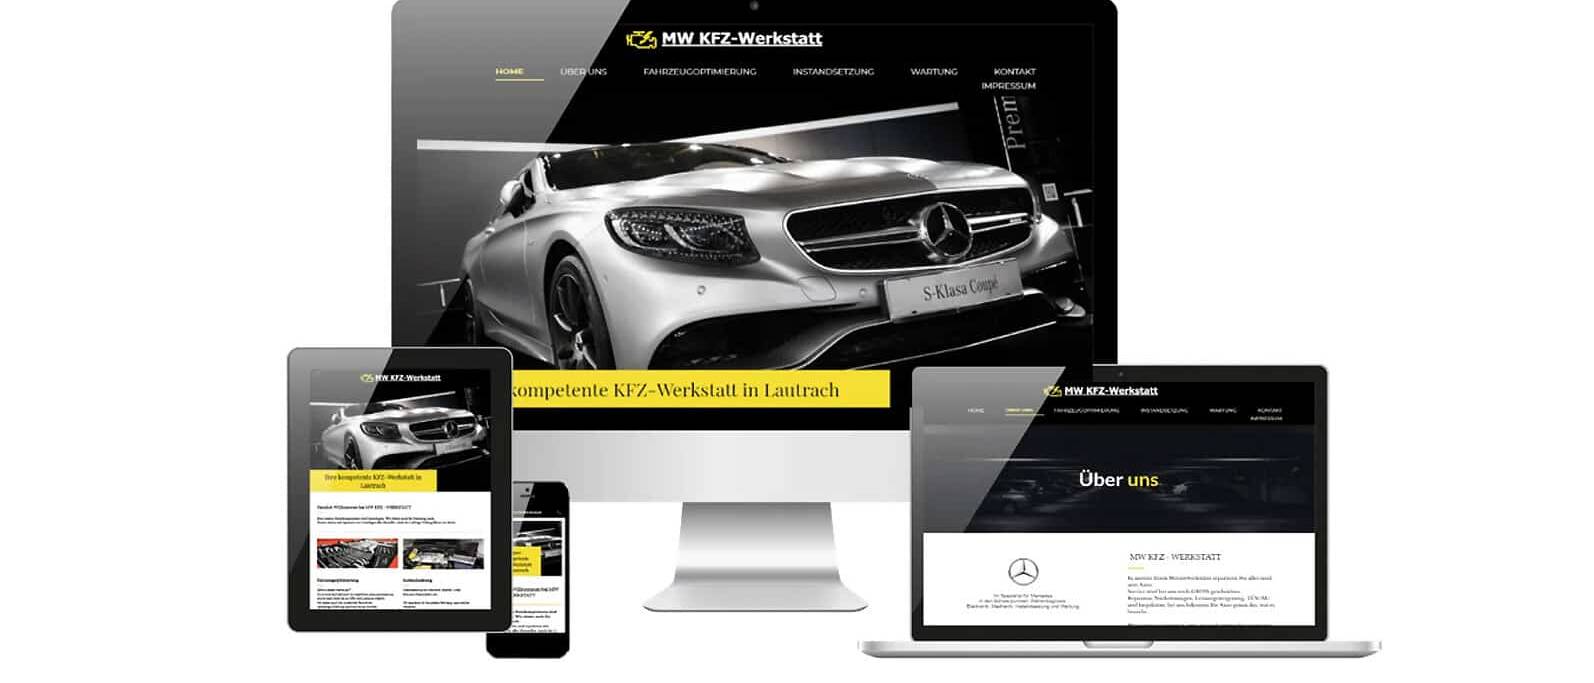 Responsive Webdesign Mockup der Website MW KFZ-Werkstatt